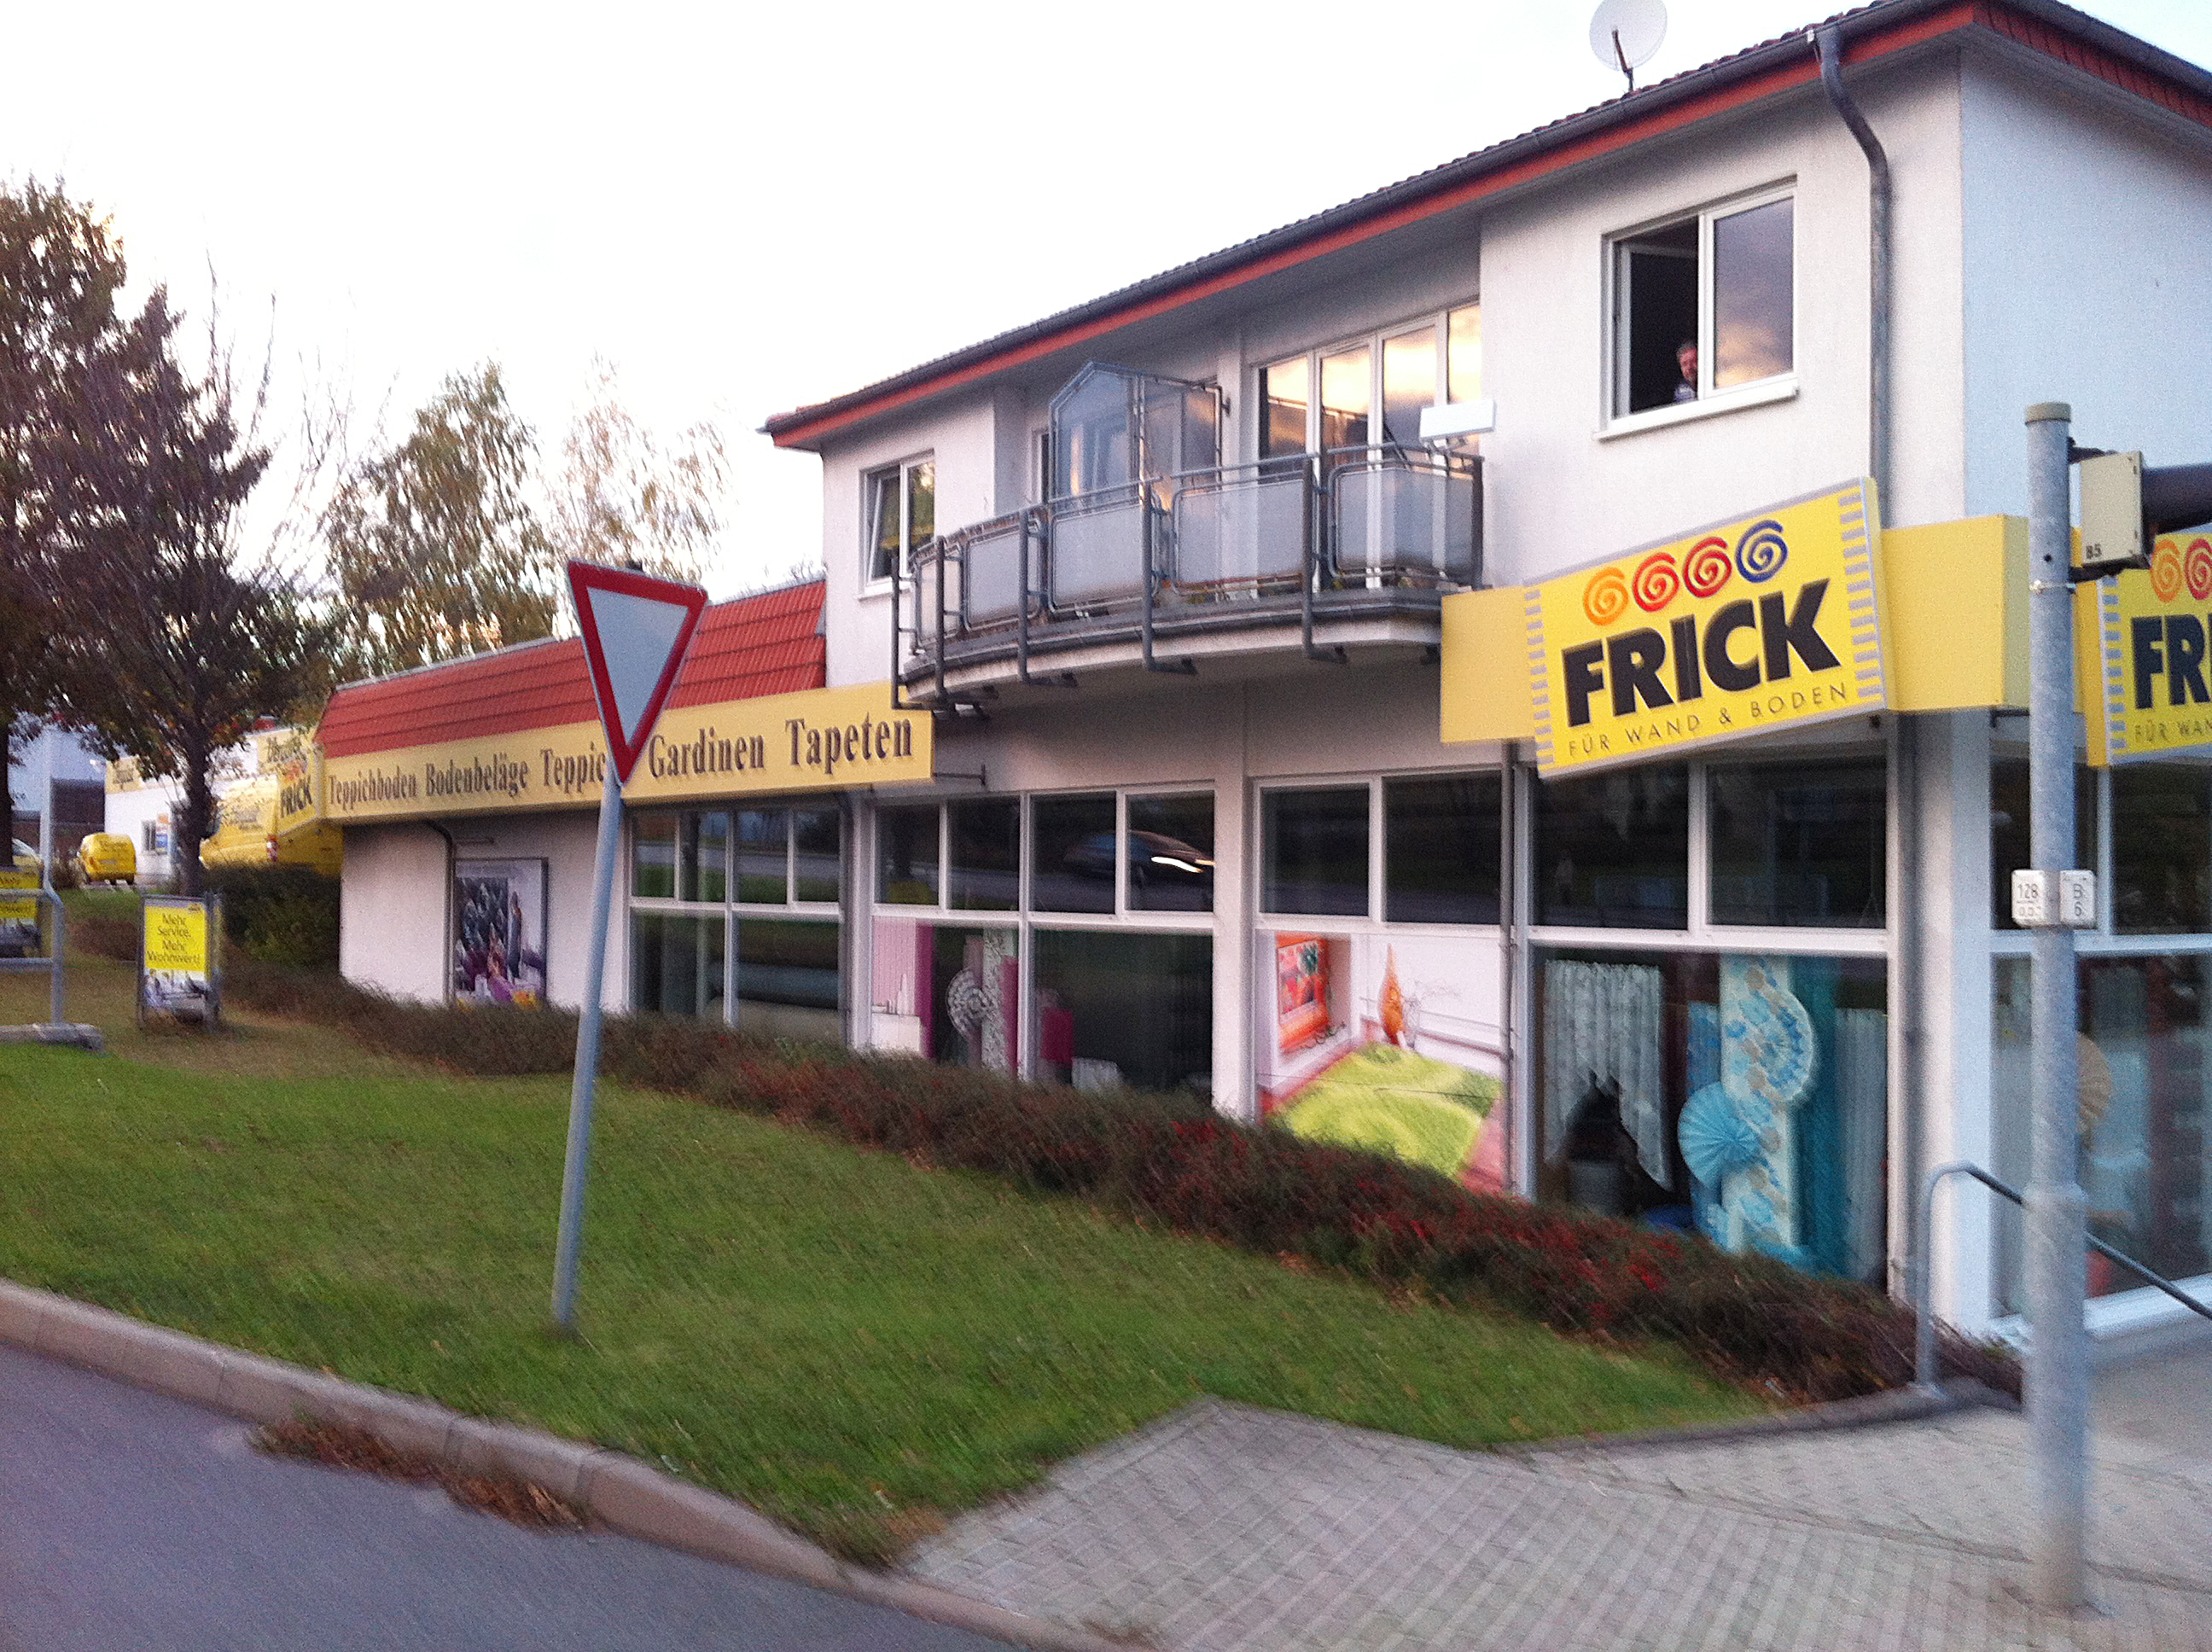 Bild 1 Frick für Wand & Boden Fachmärkte GmbH & Co. KG in Bautzen